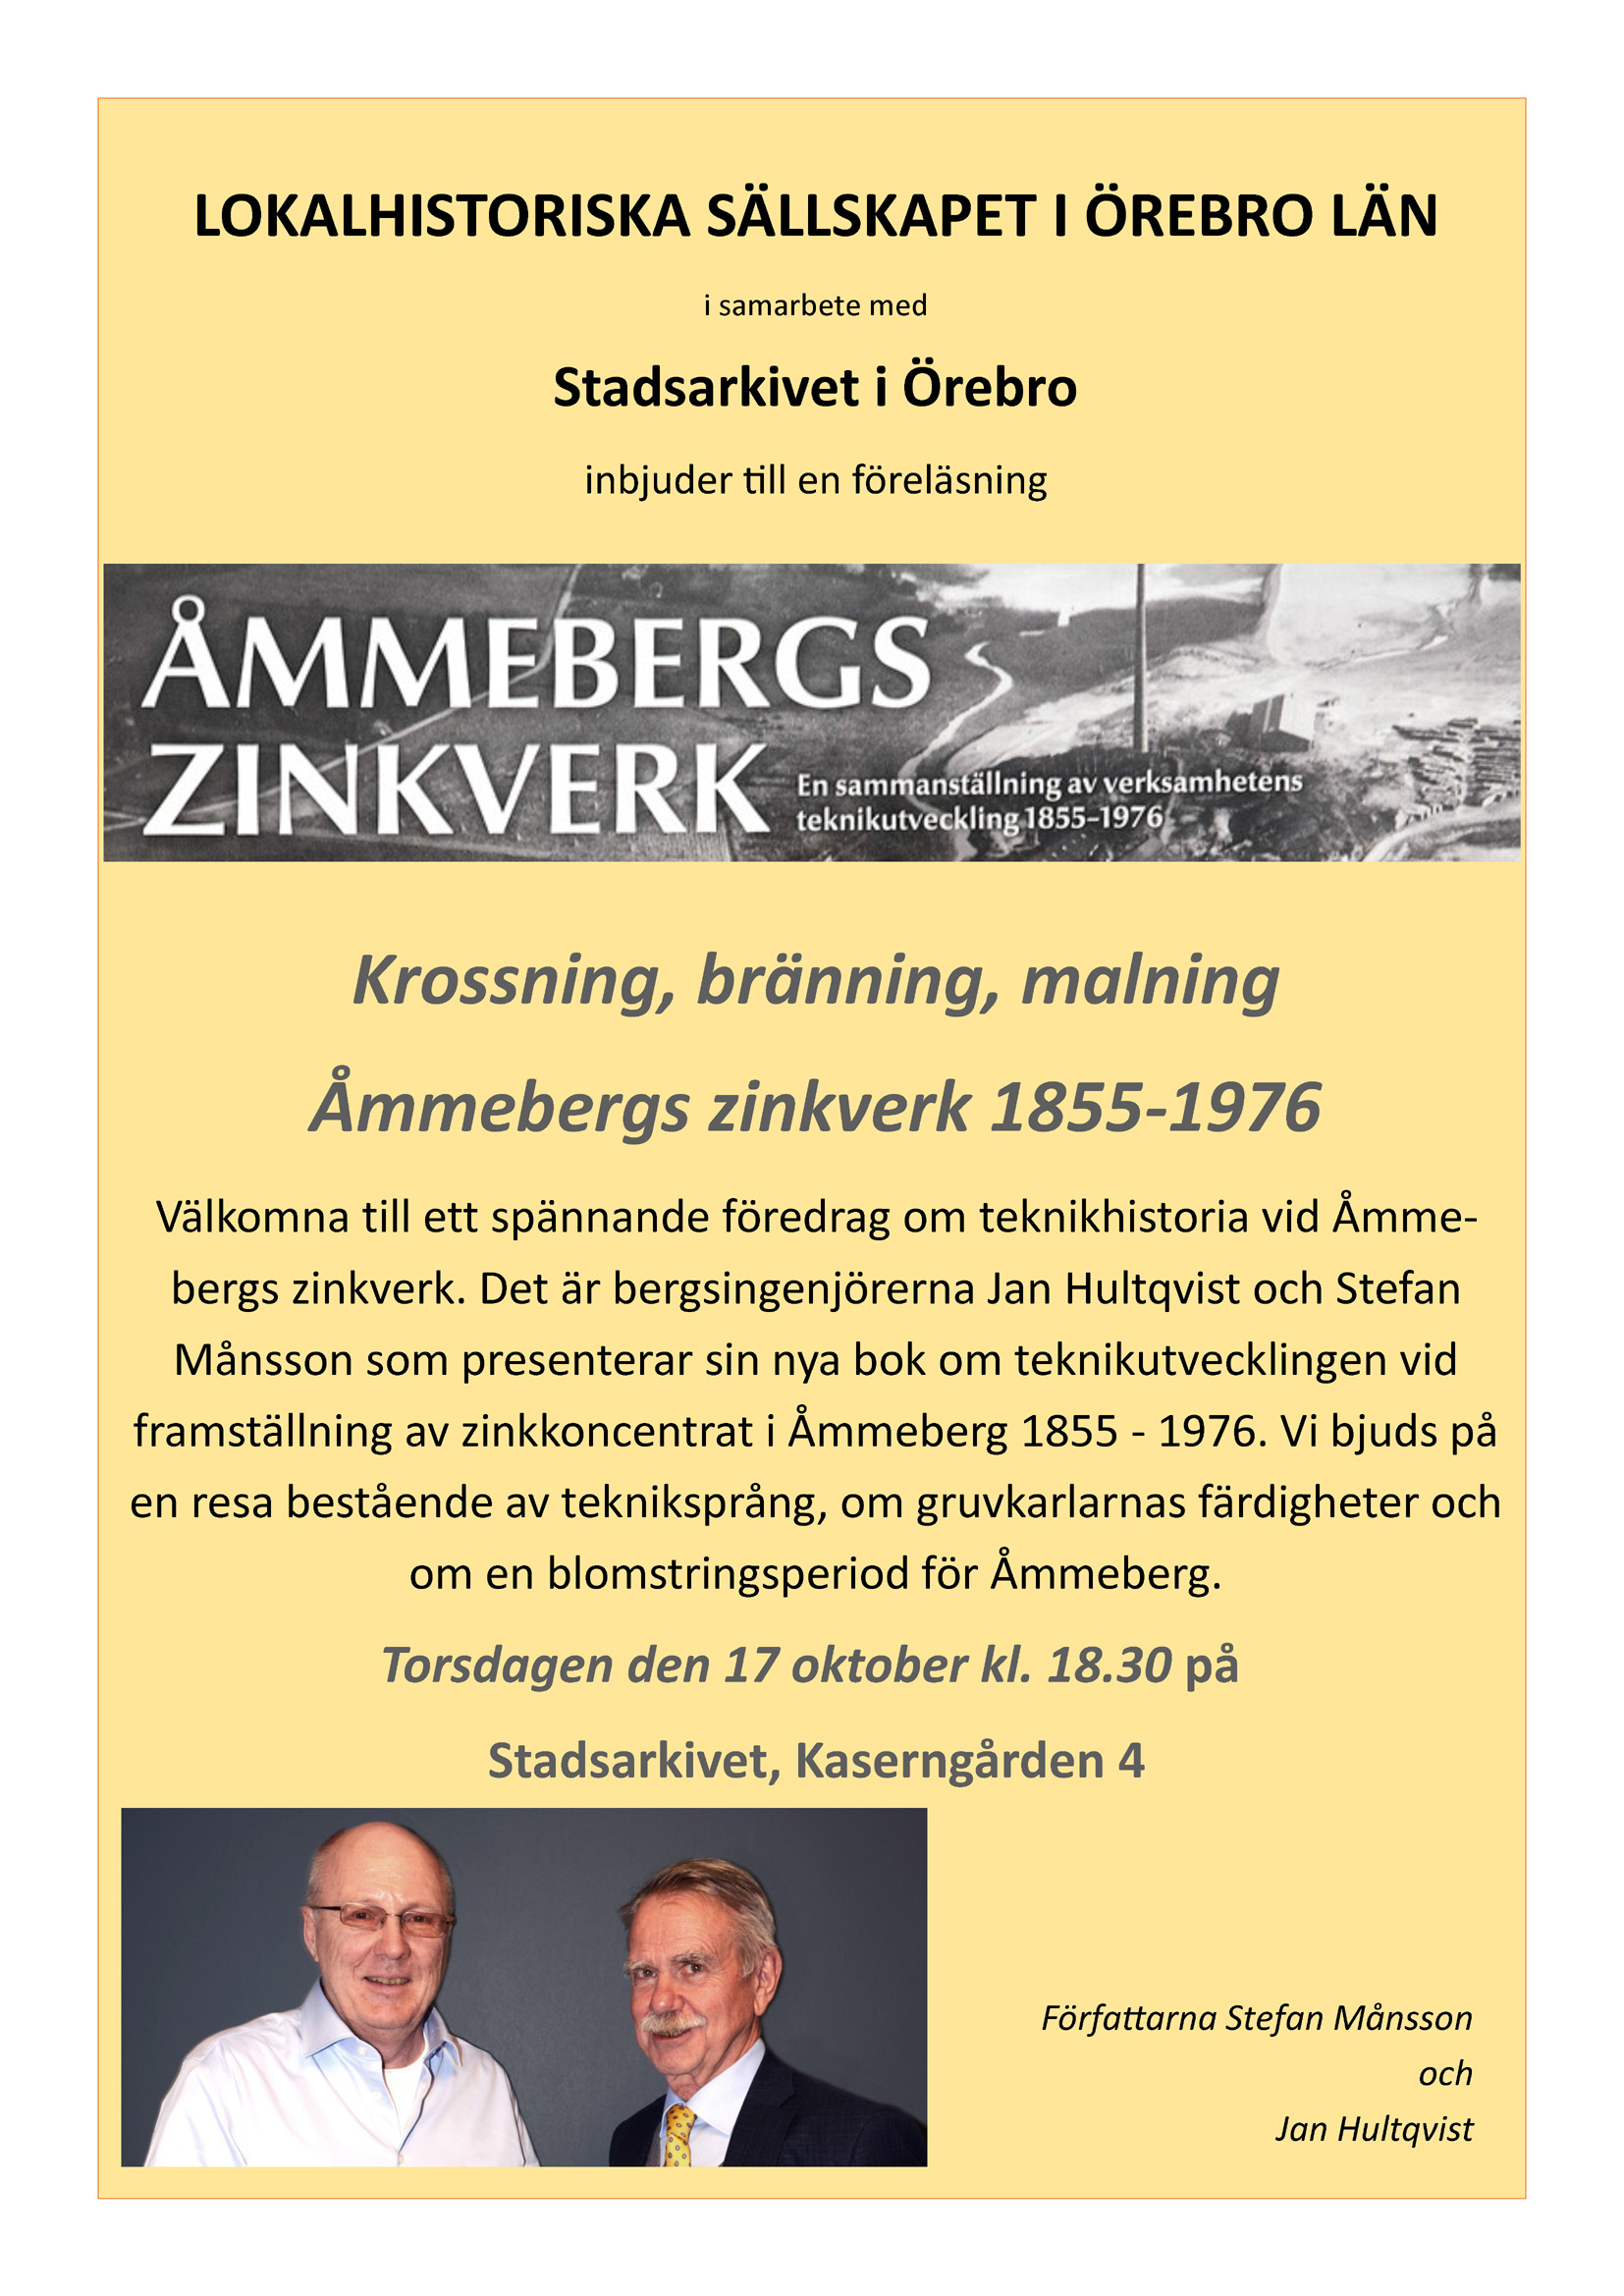 Affisch föreläsning på stadsarkivet om Åmmebergs zinkverk